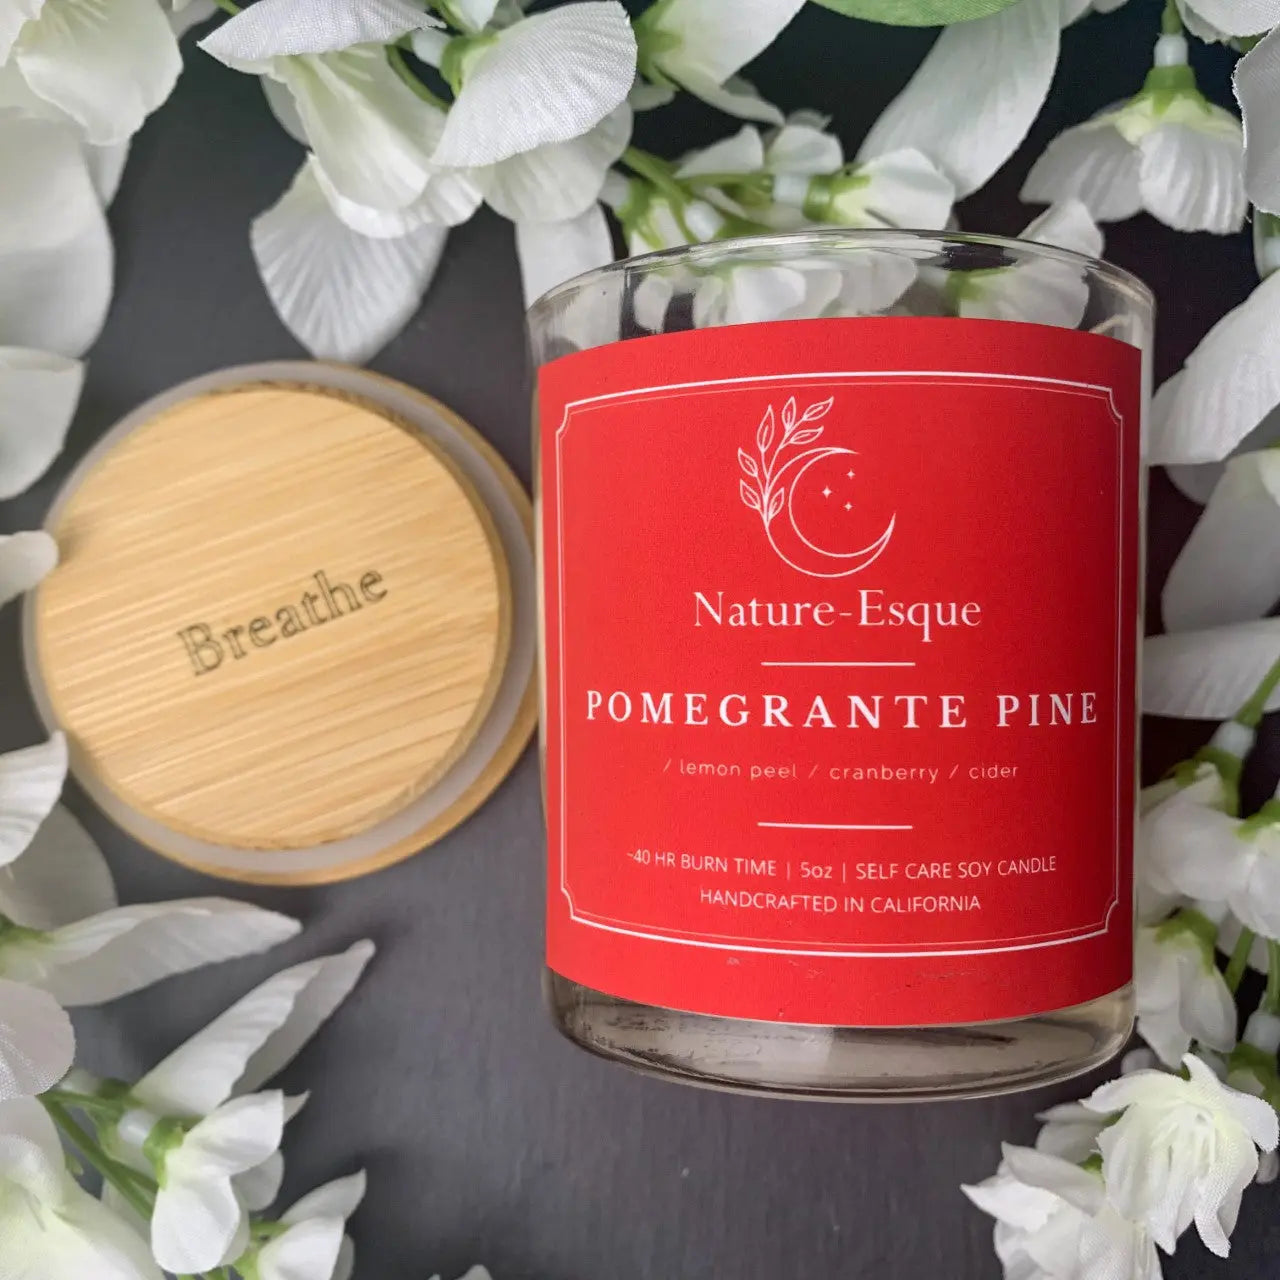 Pomegranate Pine | EMPOWERING Nature-Esque